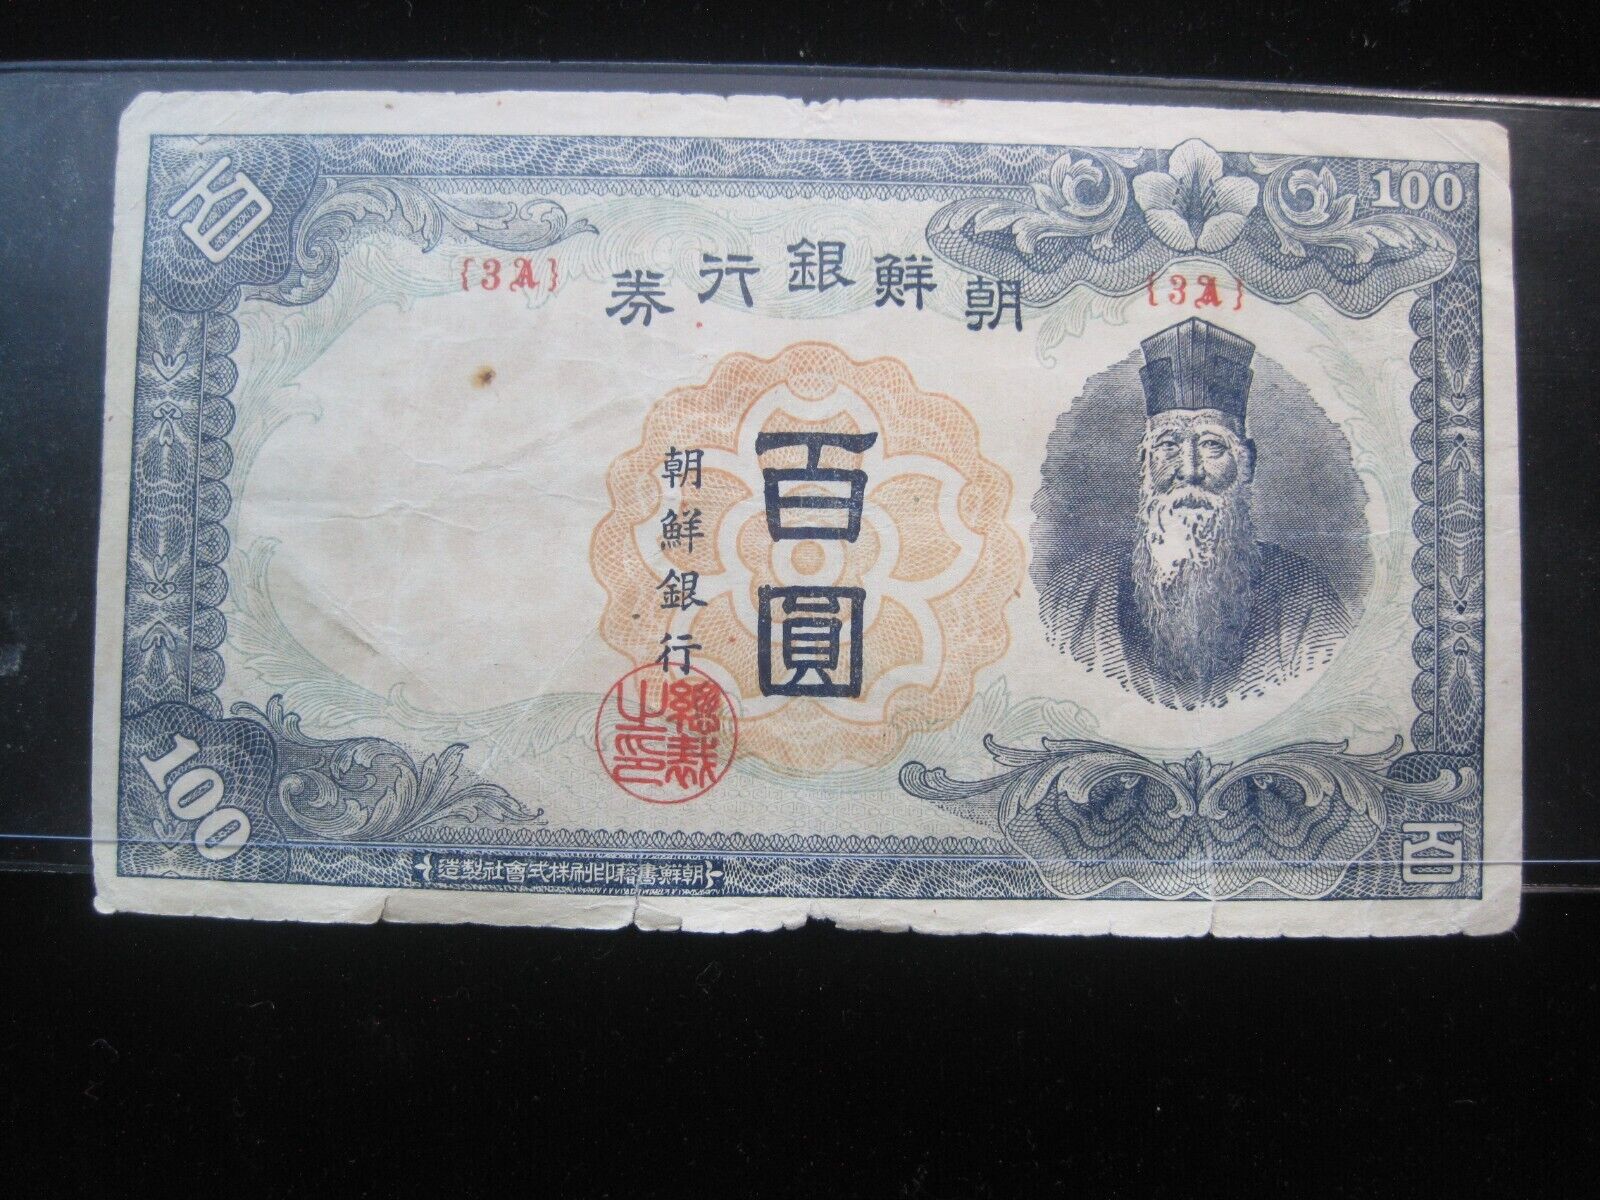 Korea 100 Yen Won 1946 Bk {3a} P45 Chosen Bank Korean 한국 3788# Money Banknote